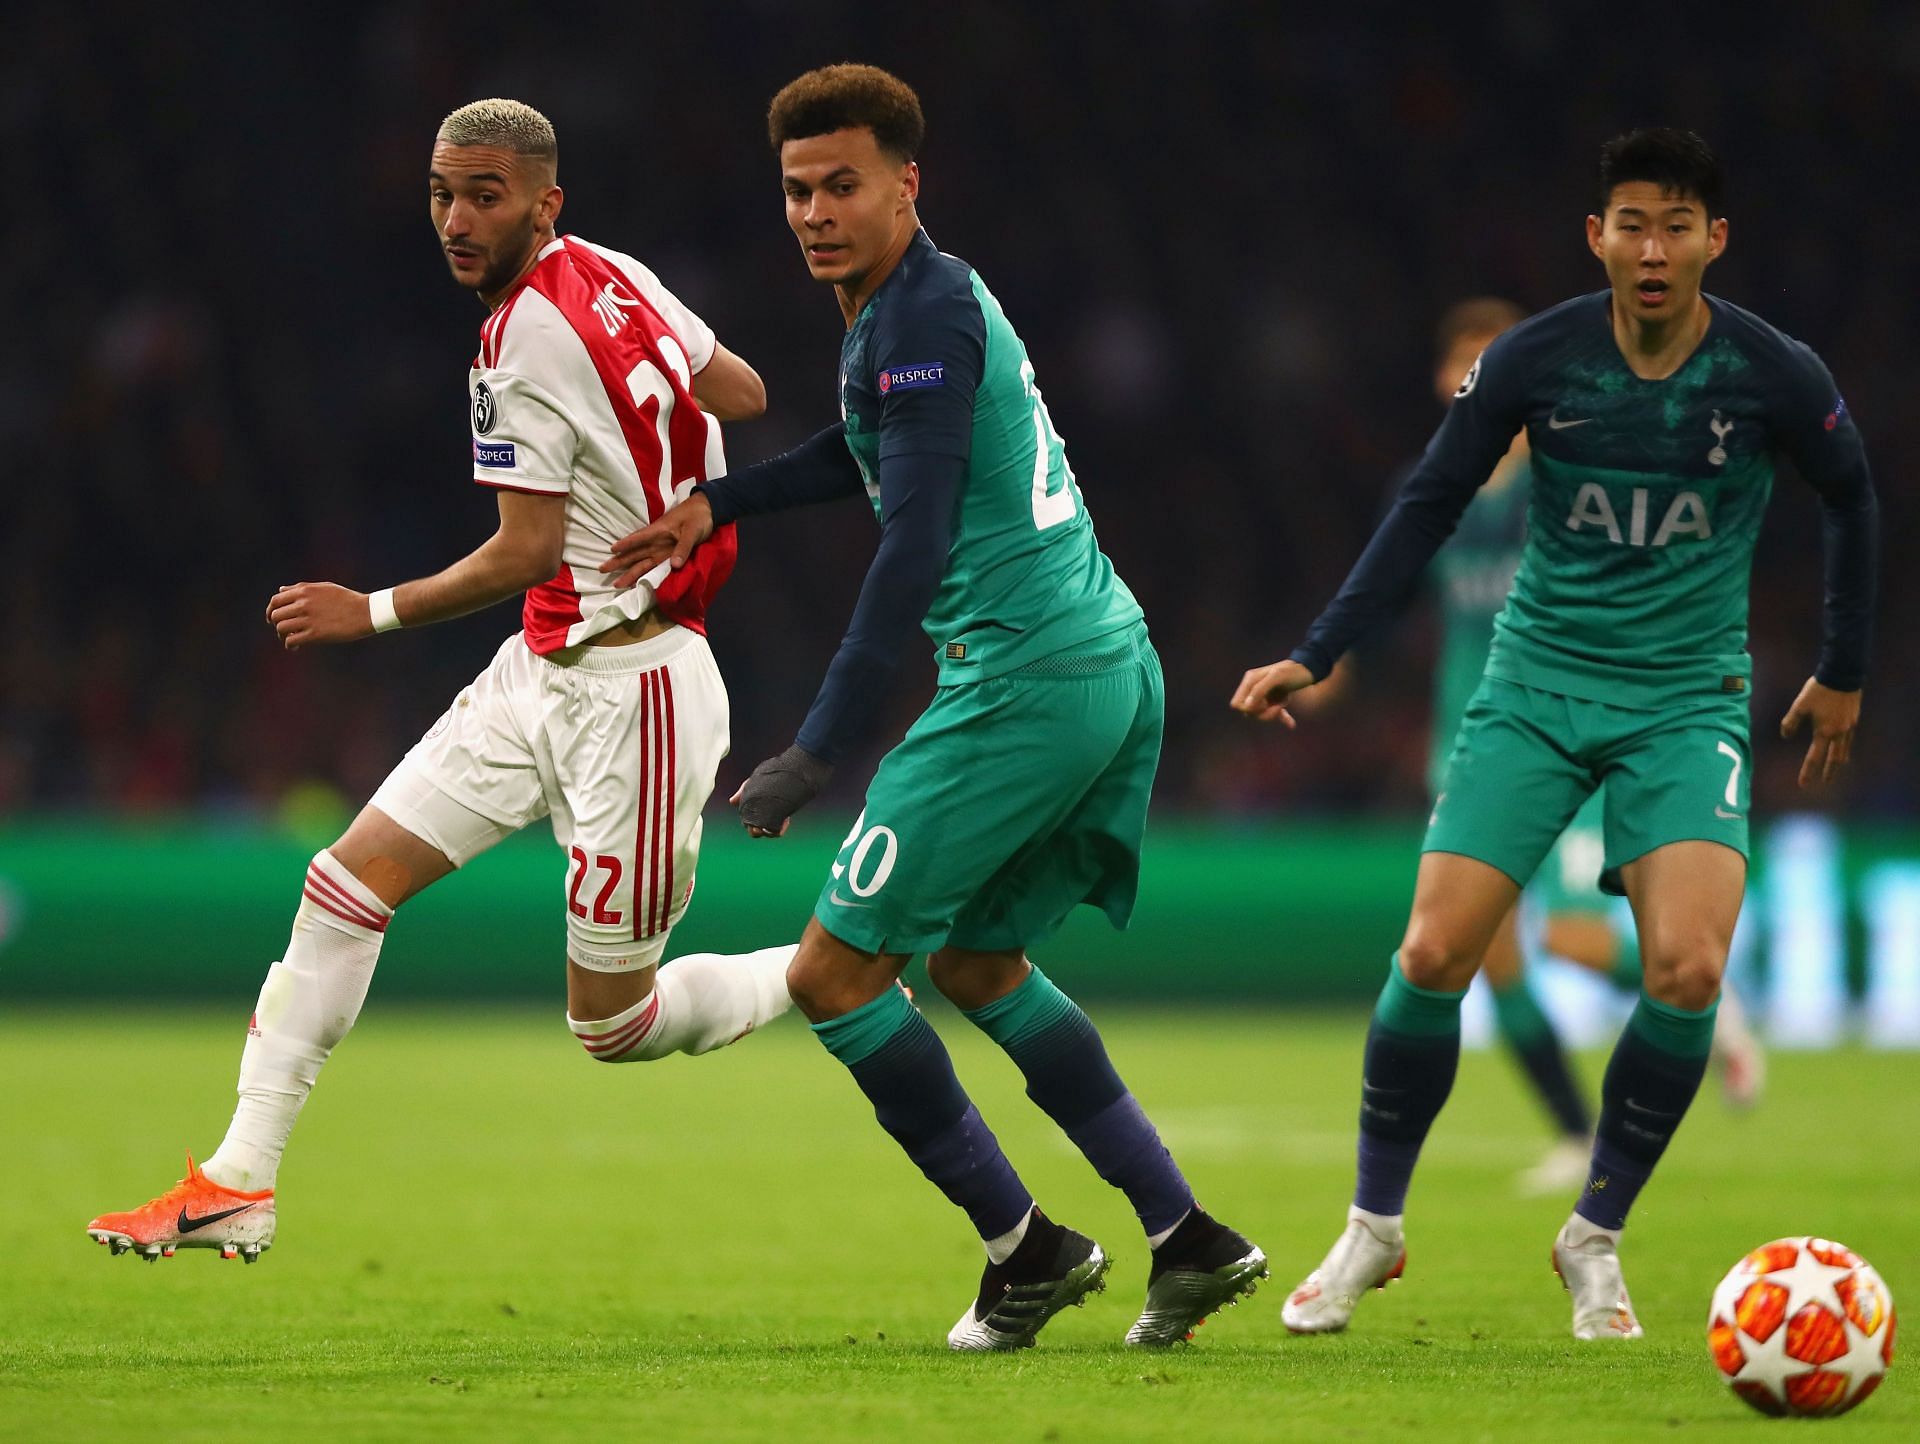 Ajax v Tottenham Hotspur - UEFA Champions League Semi Final: Second Leg